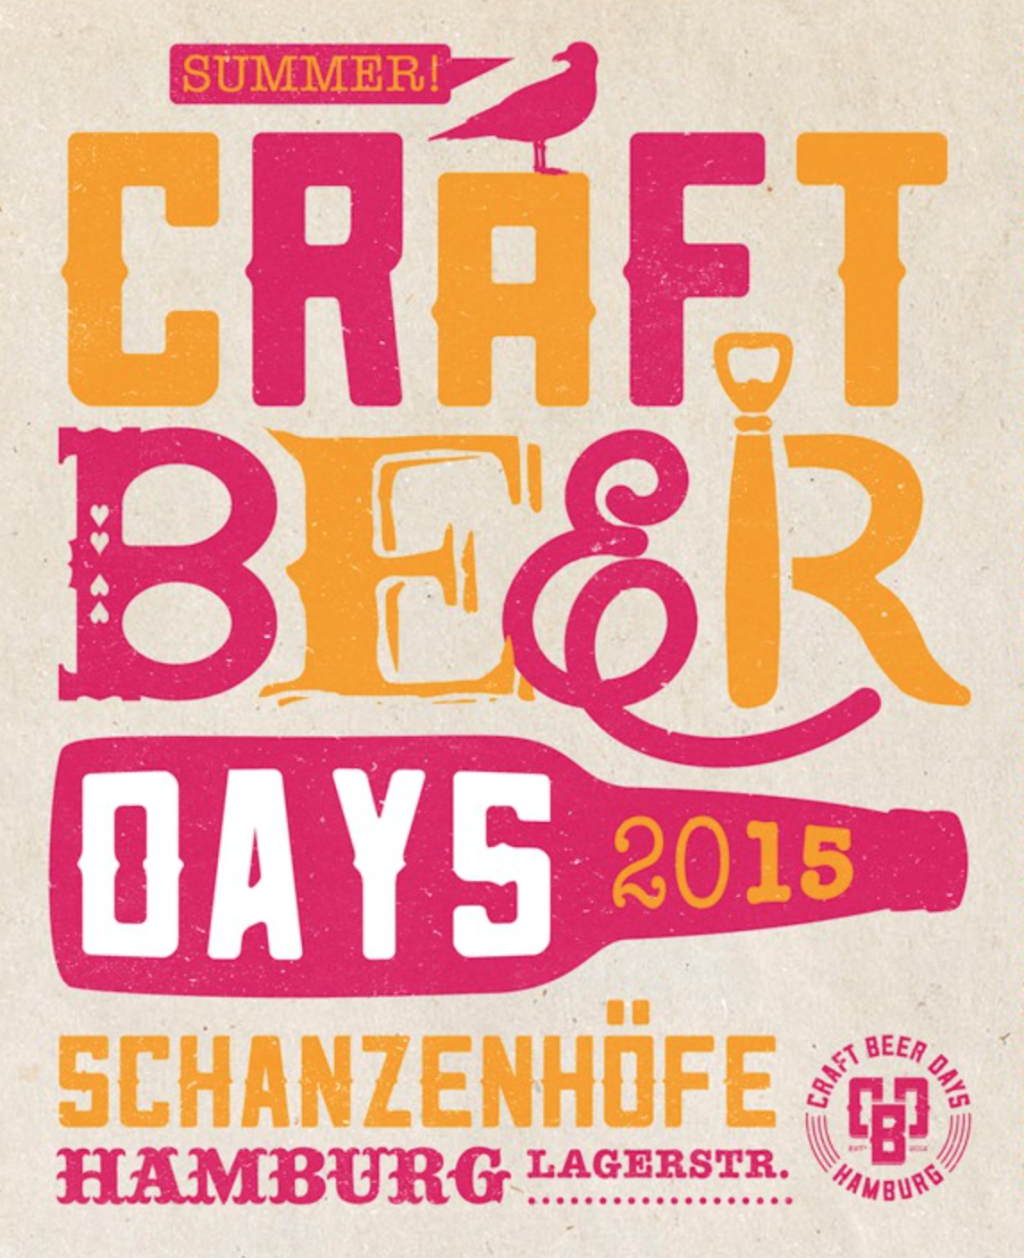 Die Craft Beer Days in den Schanzenhöfen könnt ihr auch heute noch besuchen. Zwanzig ausgewählte Brauereien präsentieren euch ihre edelsten Tropfen. Insgesamt werden euch hier über 100 Biere aus Hamburg und dem Rest der Welt kredenzt. Obendrauf gibt es köstliches Craft Food, Musik und Workshops.